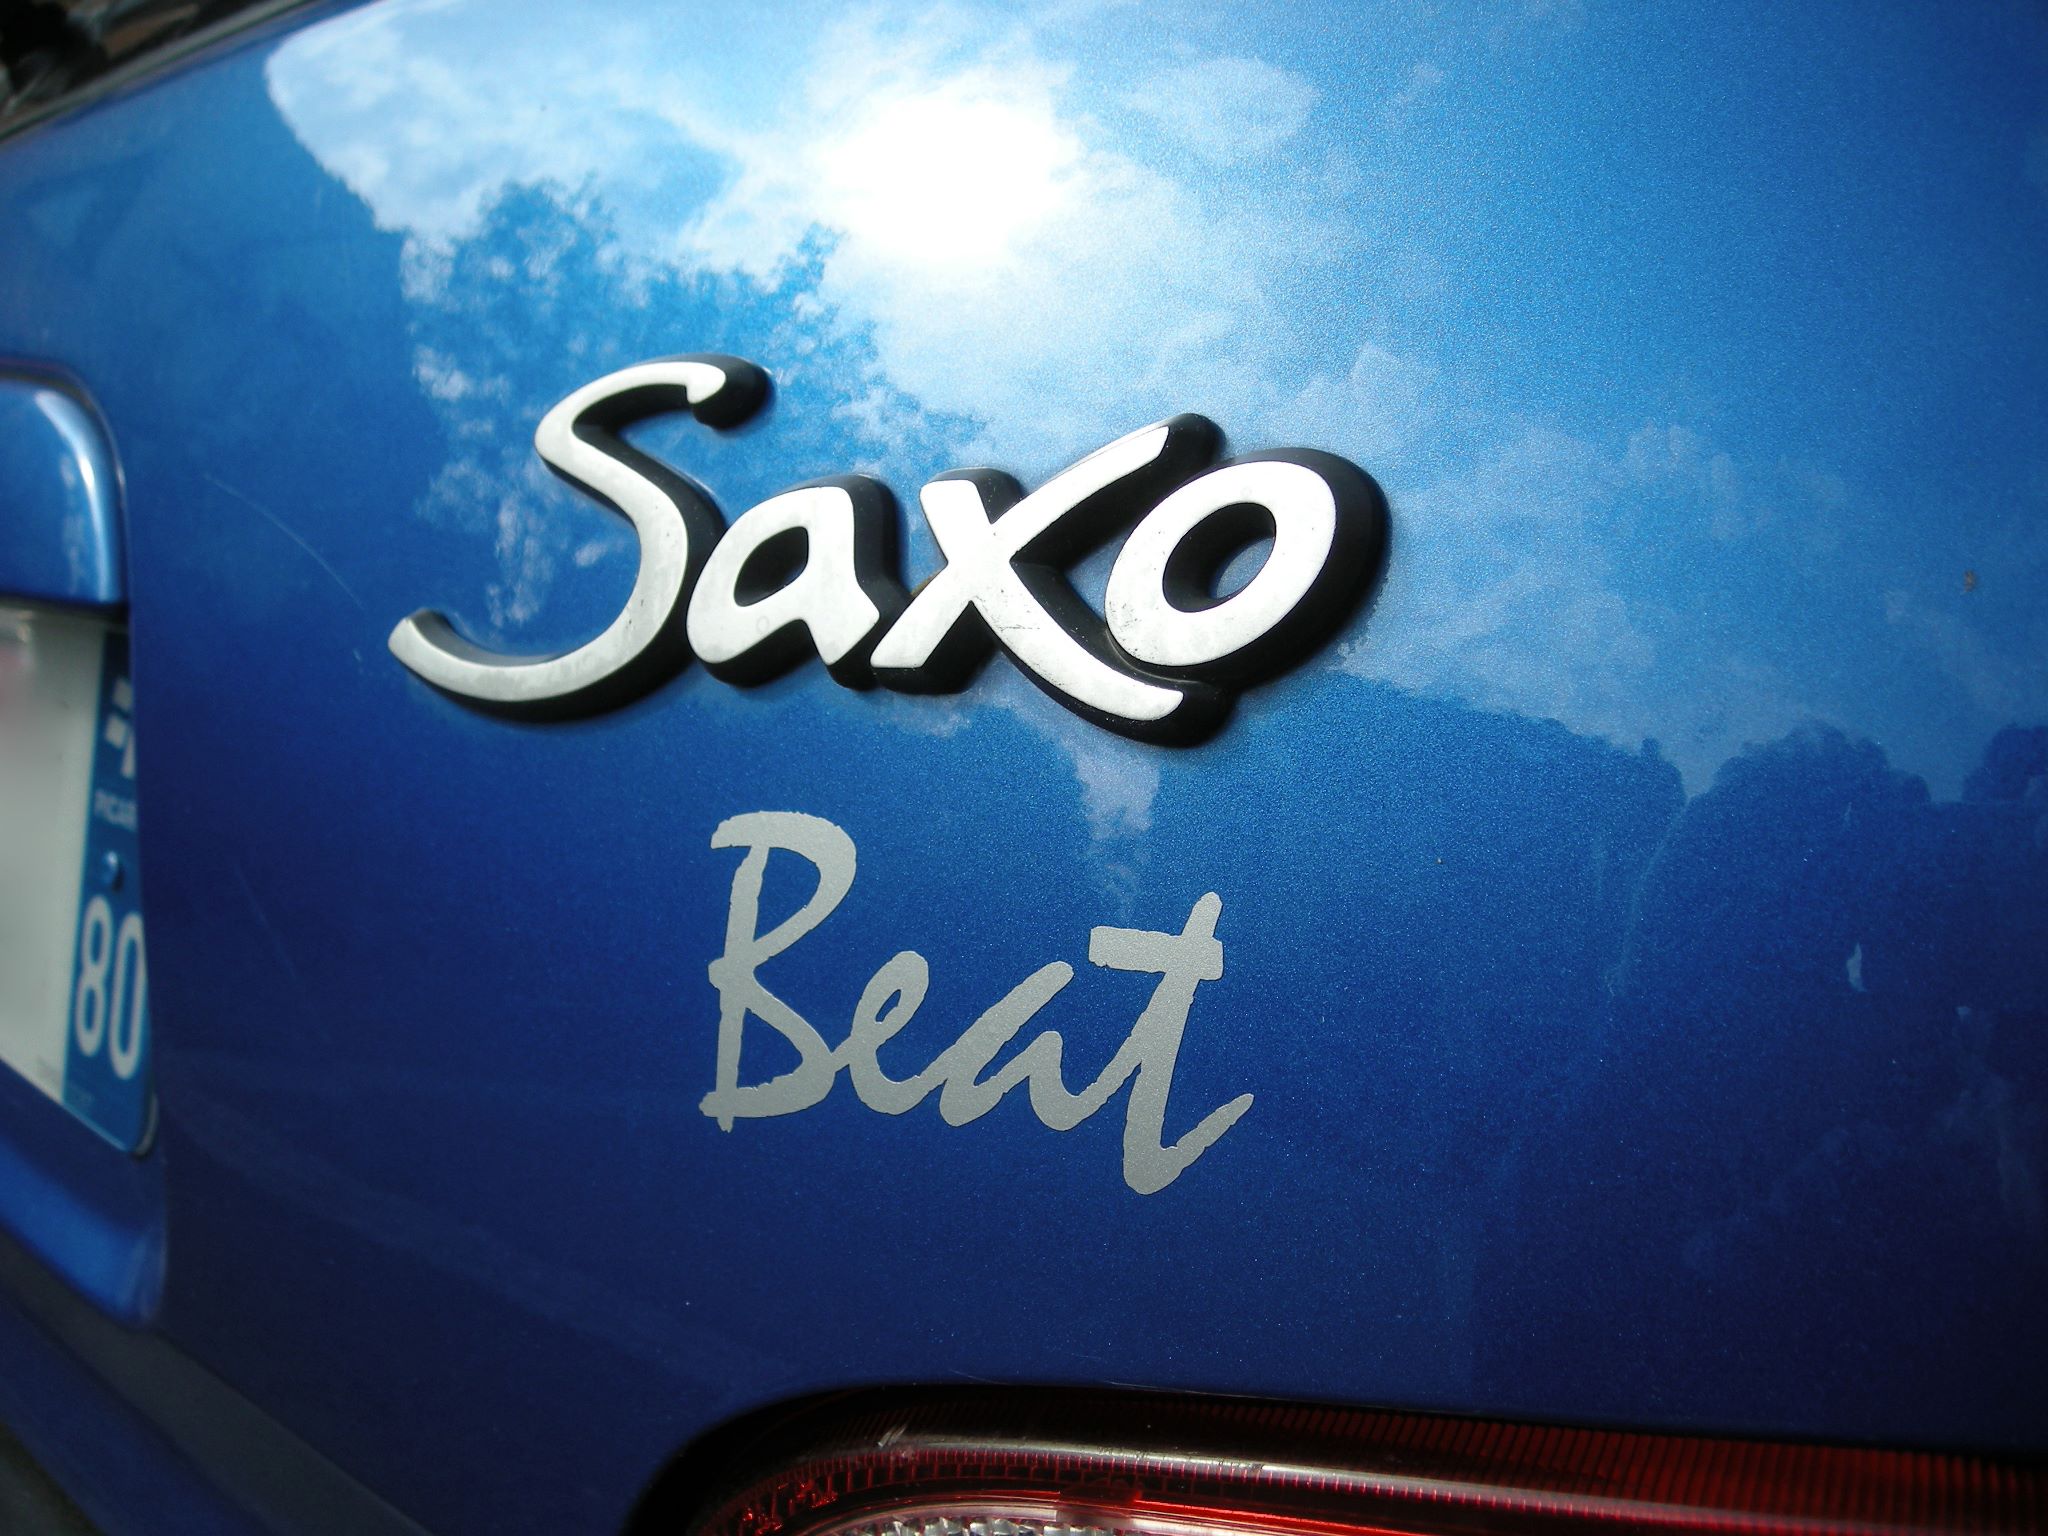 citroen_saxo_beat_logo